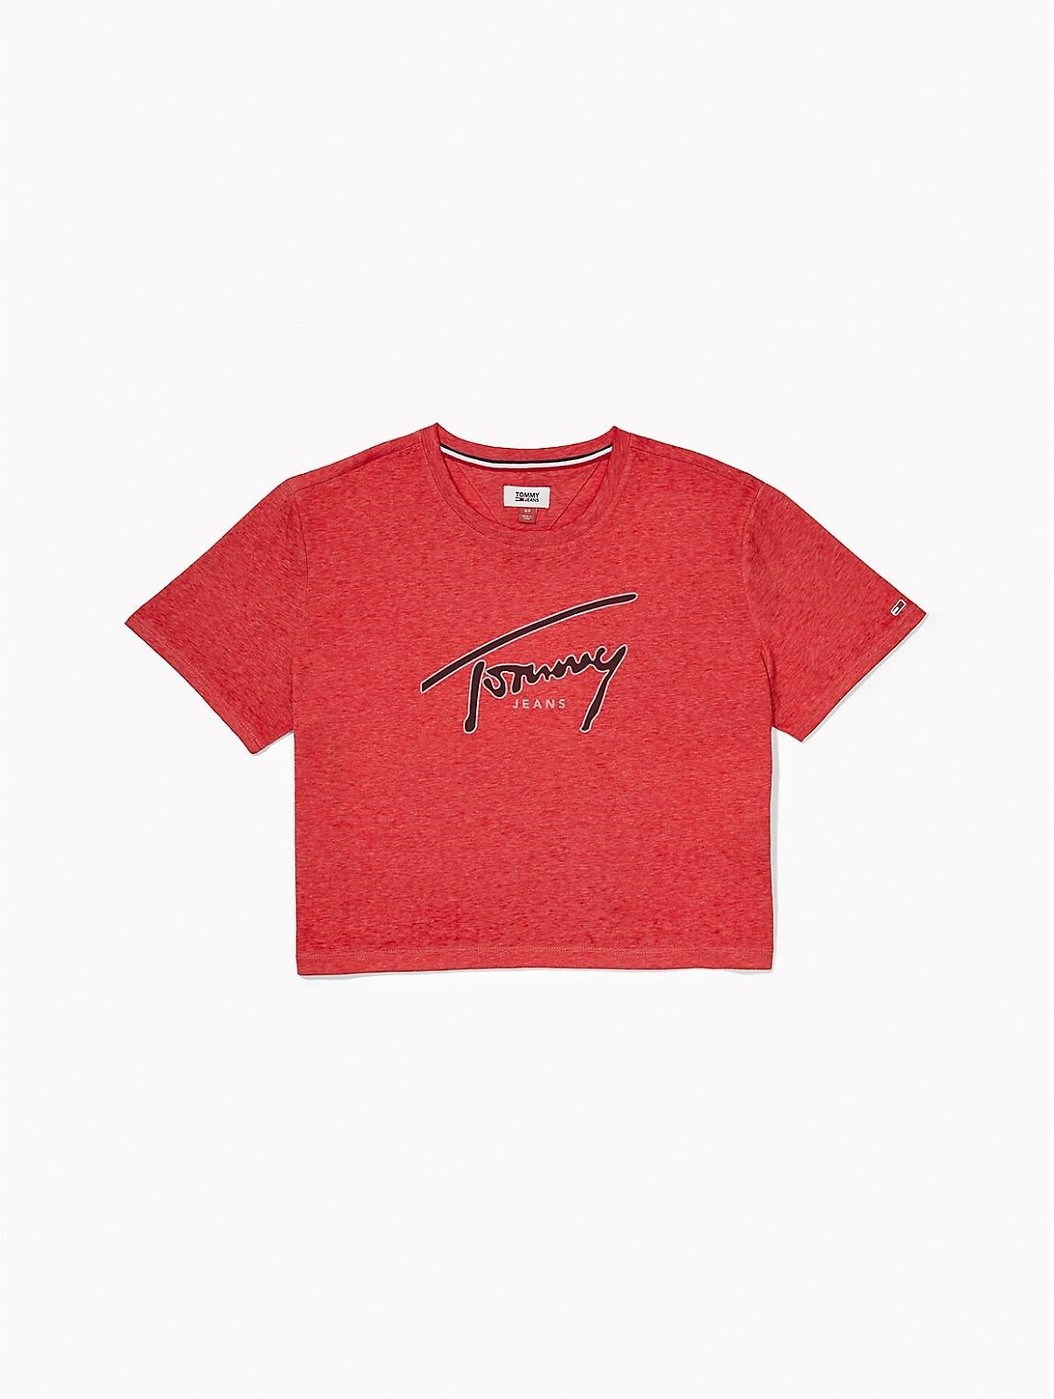 Красная футболка - женская футболка Tommy Hilfiger, L, L